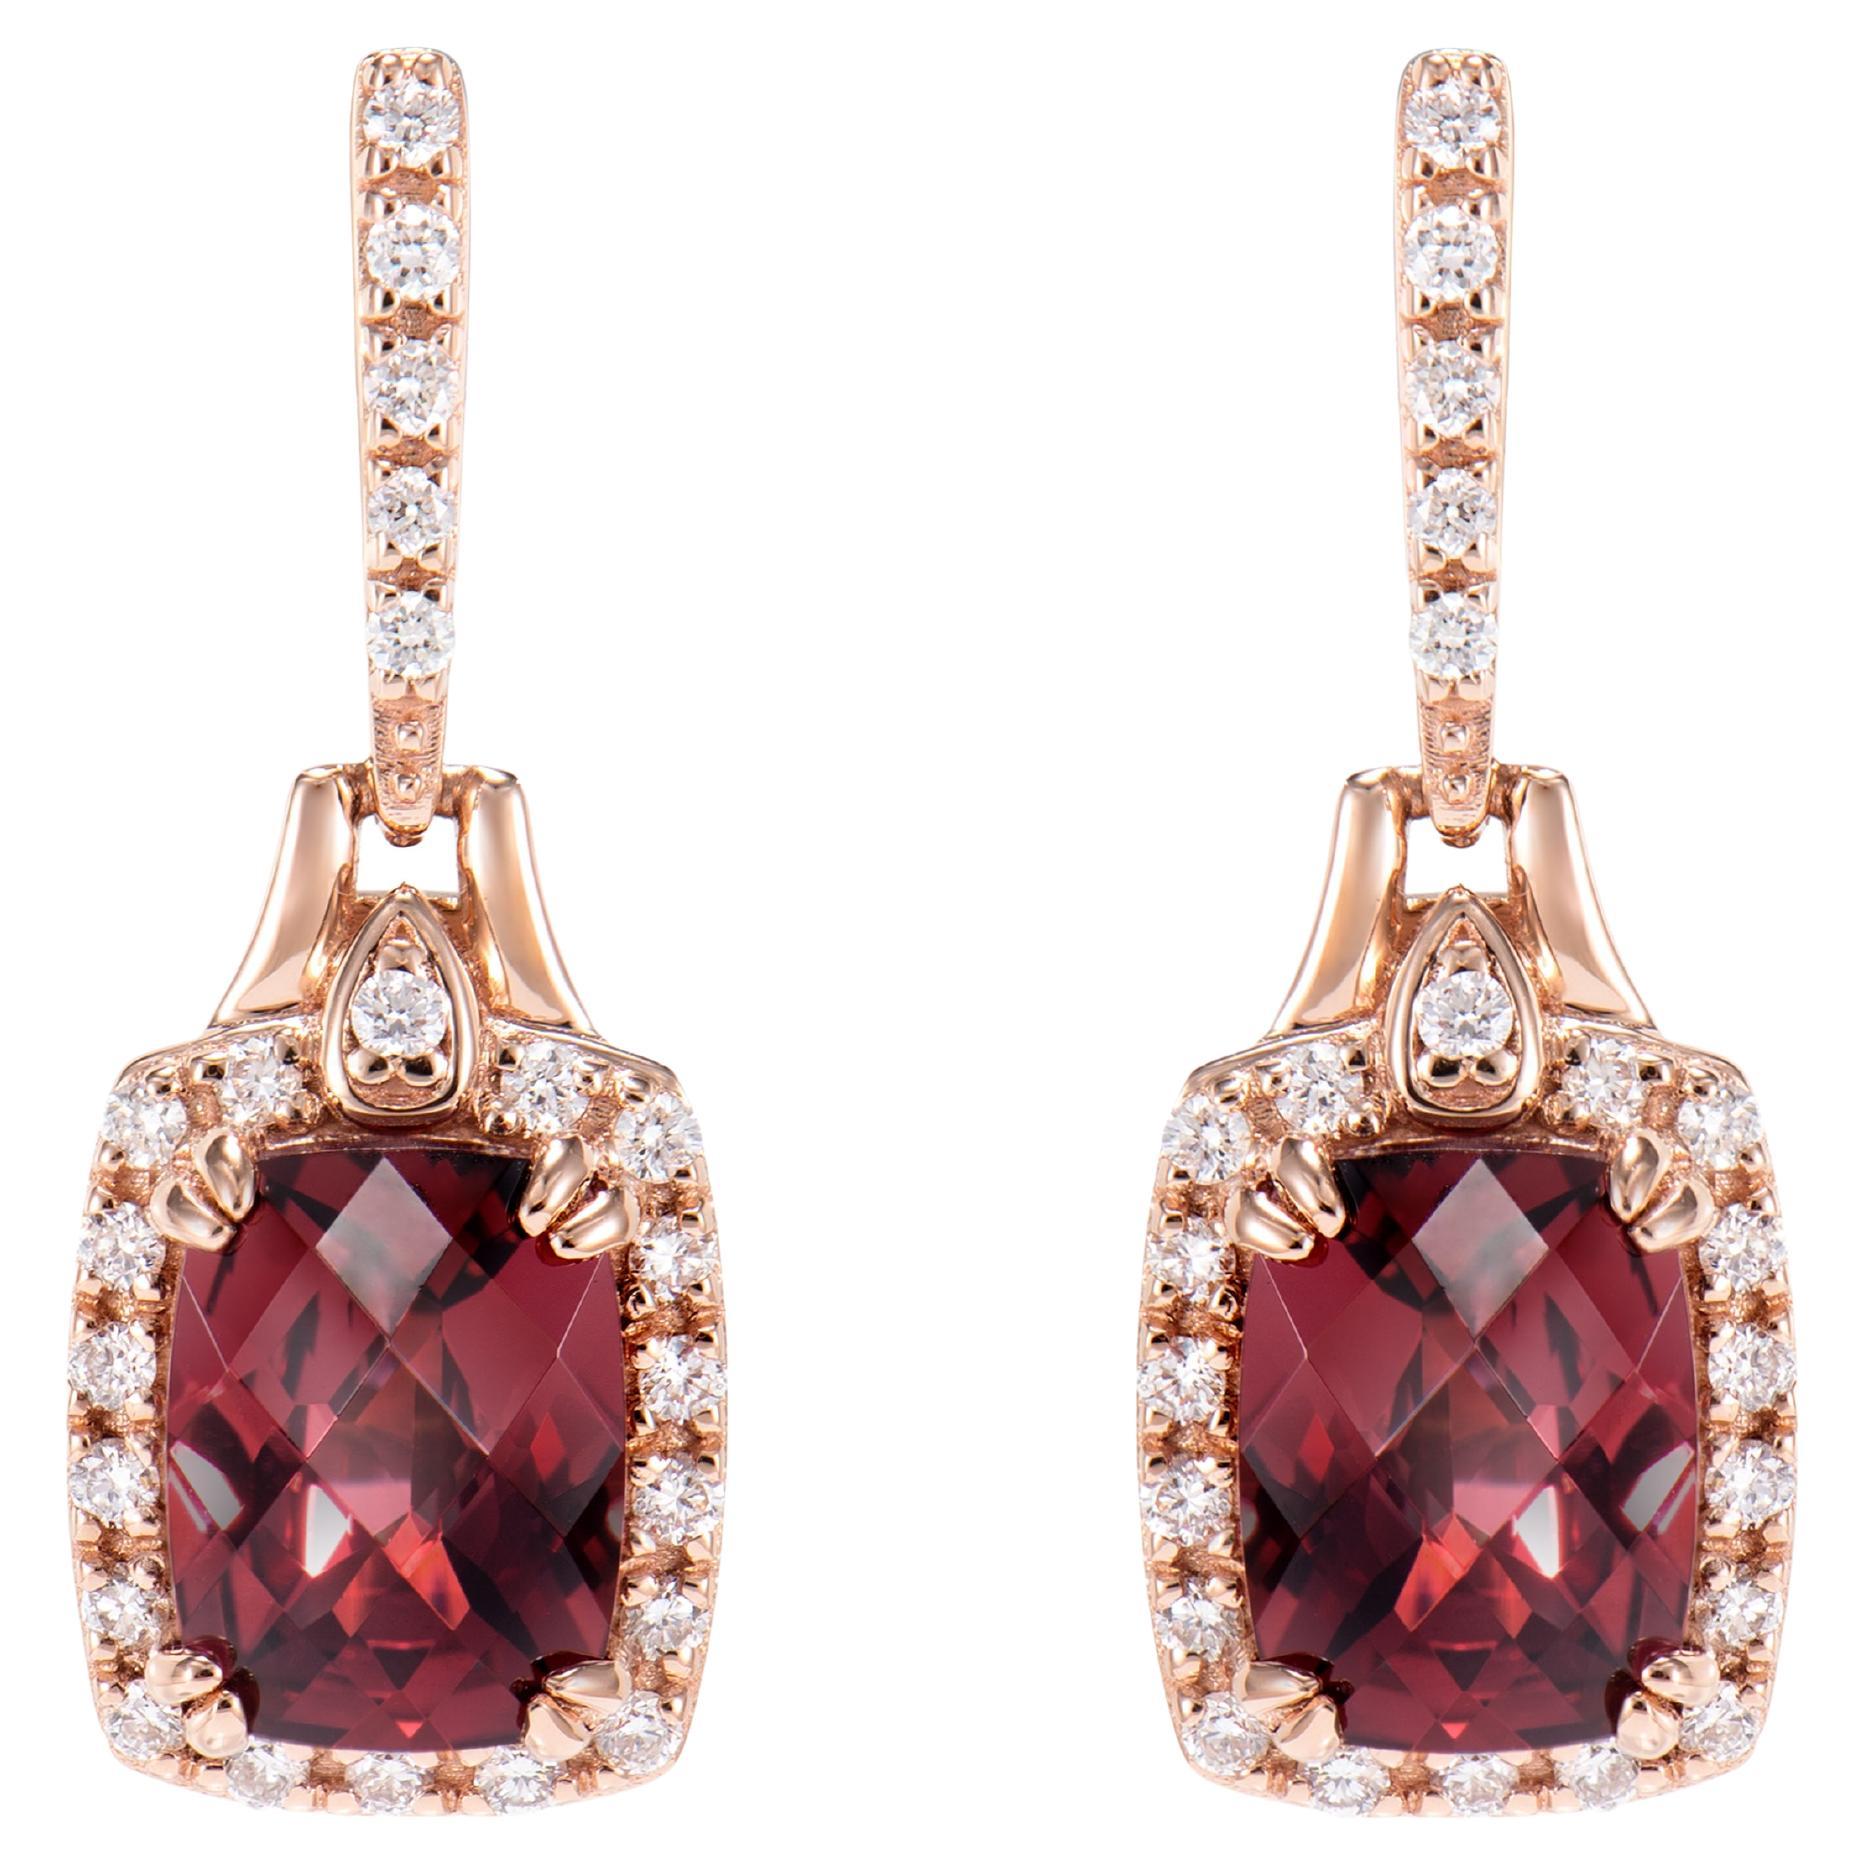 Boucles d'oreilles pendantes en or rose 18 carats et rhodolite de 3,60 carats avec diamants blancs